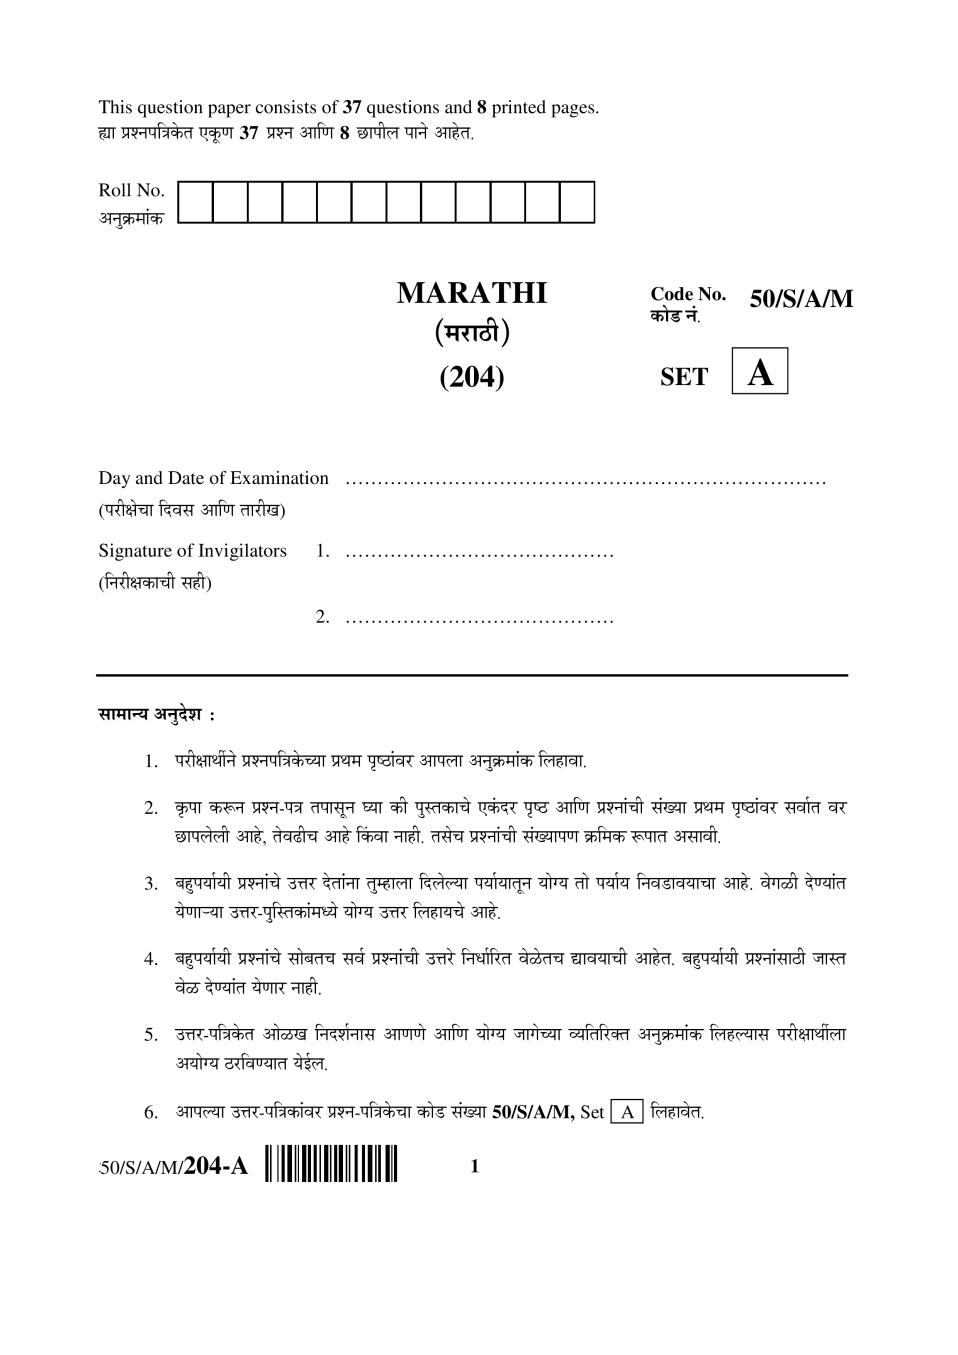 NIOS Class 10 Question Paper Apr 2015 - Marathi - Page 1